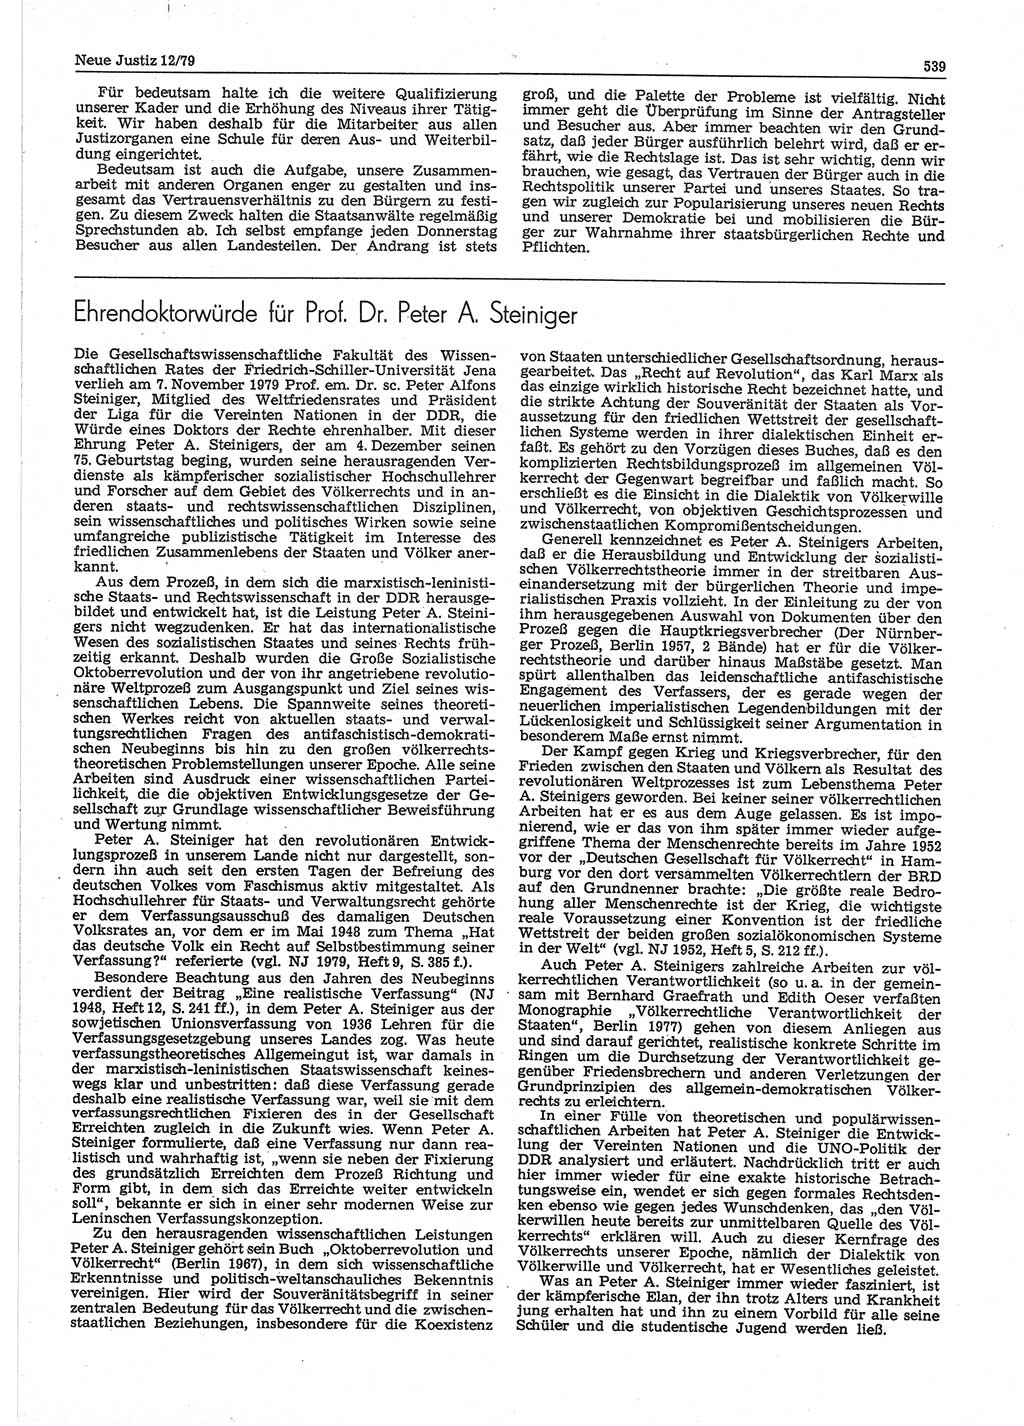 Neue Justiz (NJ), Zeitschrift für sozialistisches Recht und Gesetzlichkeit [Deutsche Demokratische Republik (DDR)], 33. Jahrgang 1979, Seite 539 (NJ DDR 1979, S. 539)